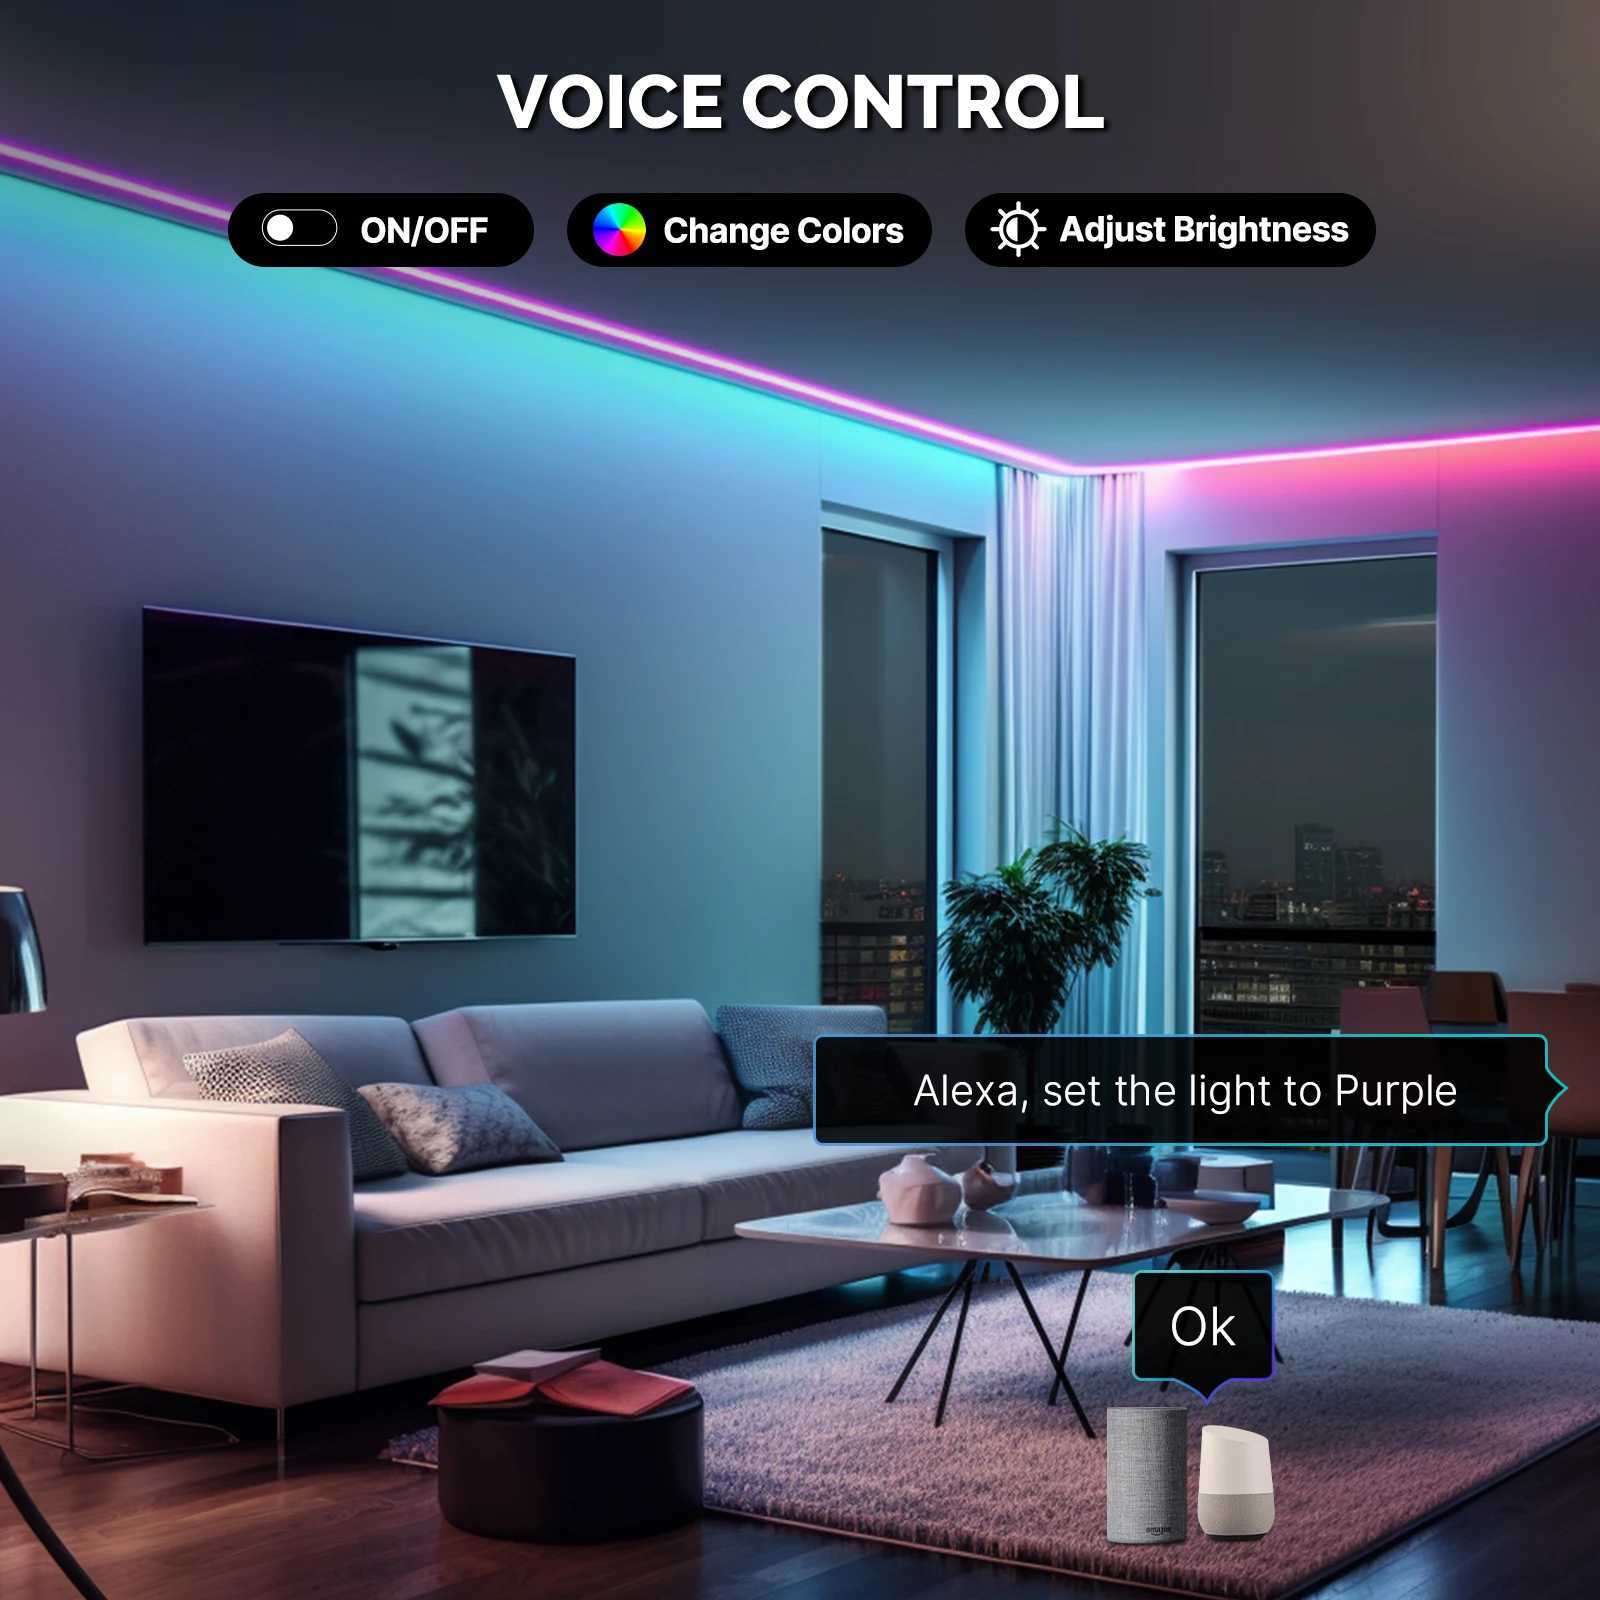 Светодиодная неоновая вывеска MOES Wi-Fi Smart Light Strip 16 миллионов цветов RGB Веревочная лампа для подсветки телевизора Декор вечеринки Работа с Alexa Google Home YQ240126